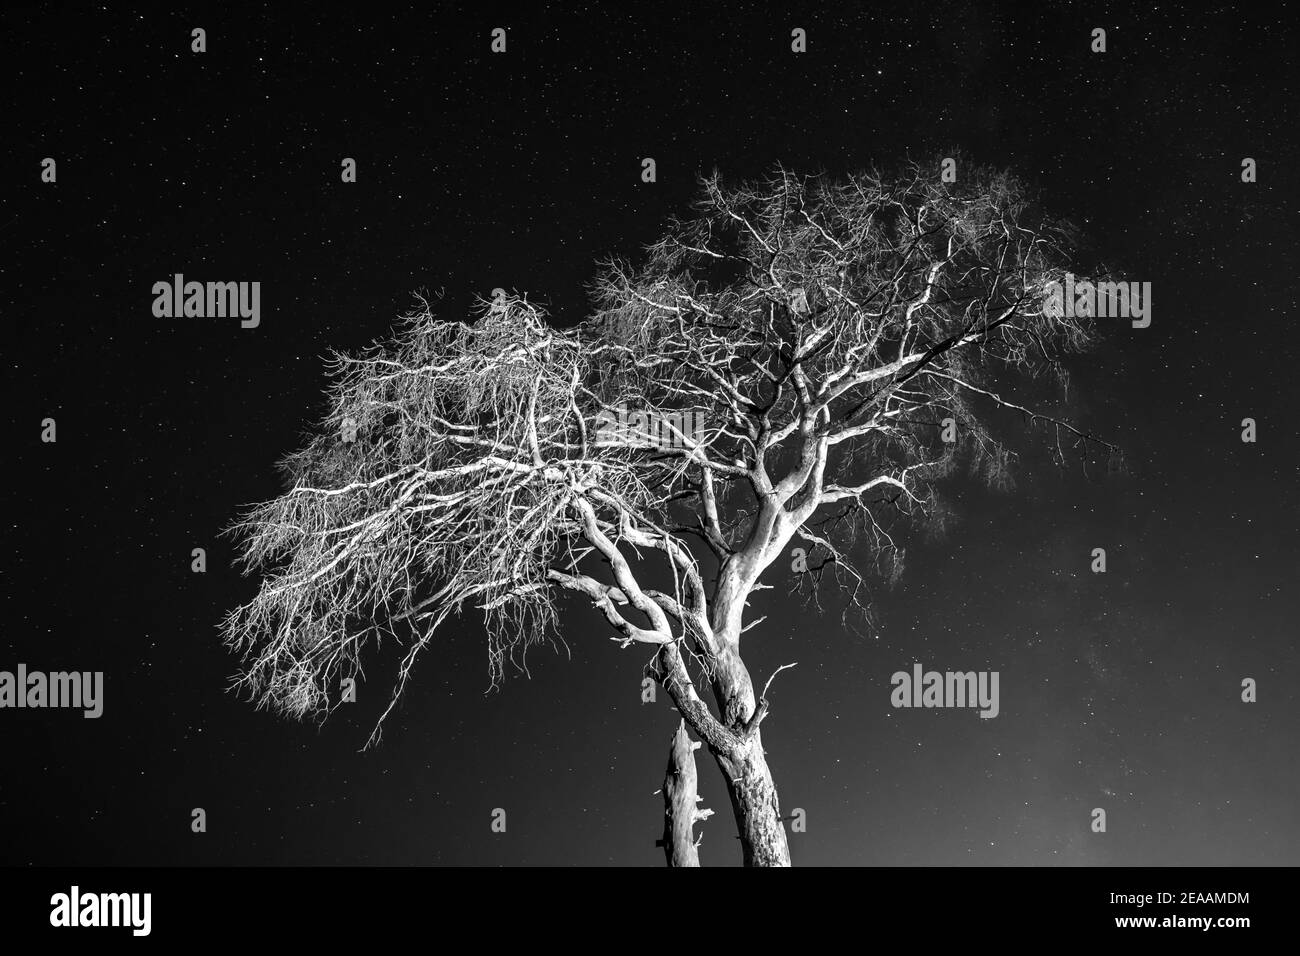 Corona de árbol seco bajo un cielo nocturno lleno de estrellas Foto de stock